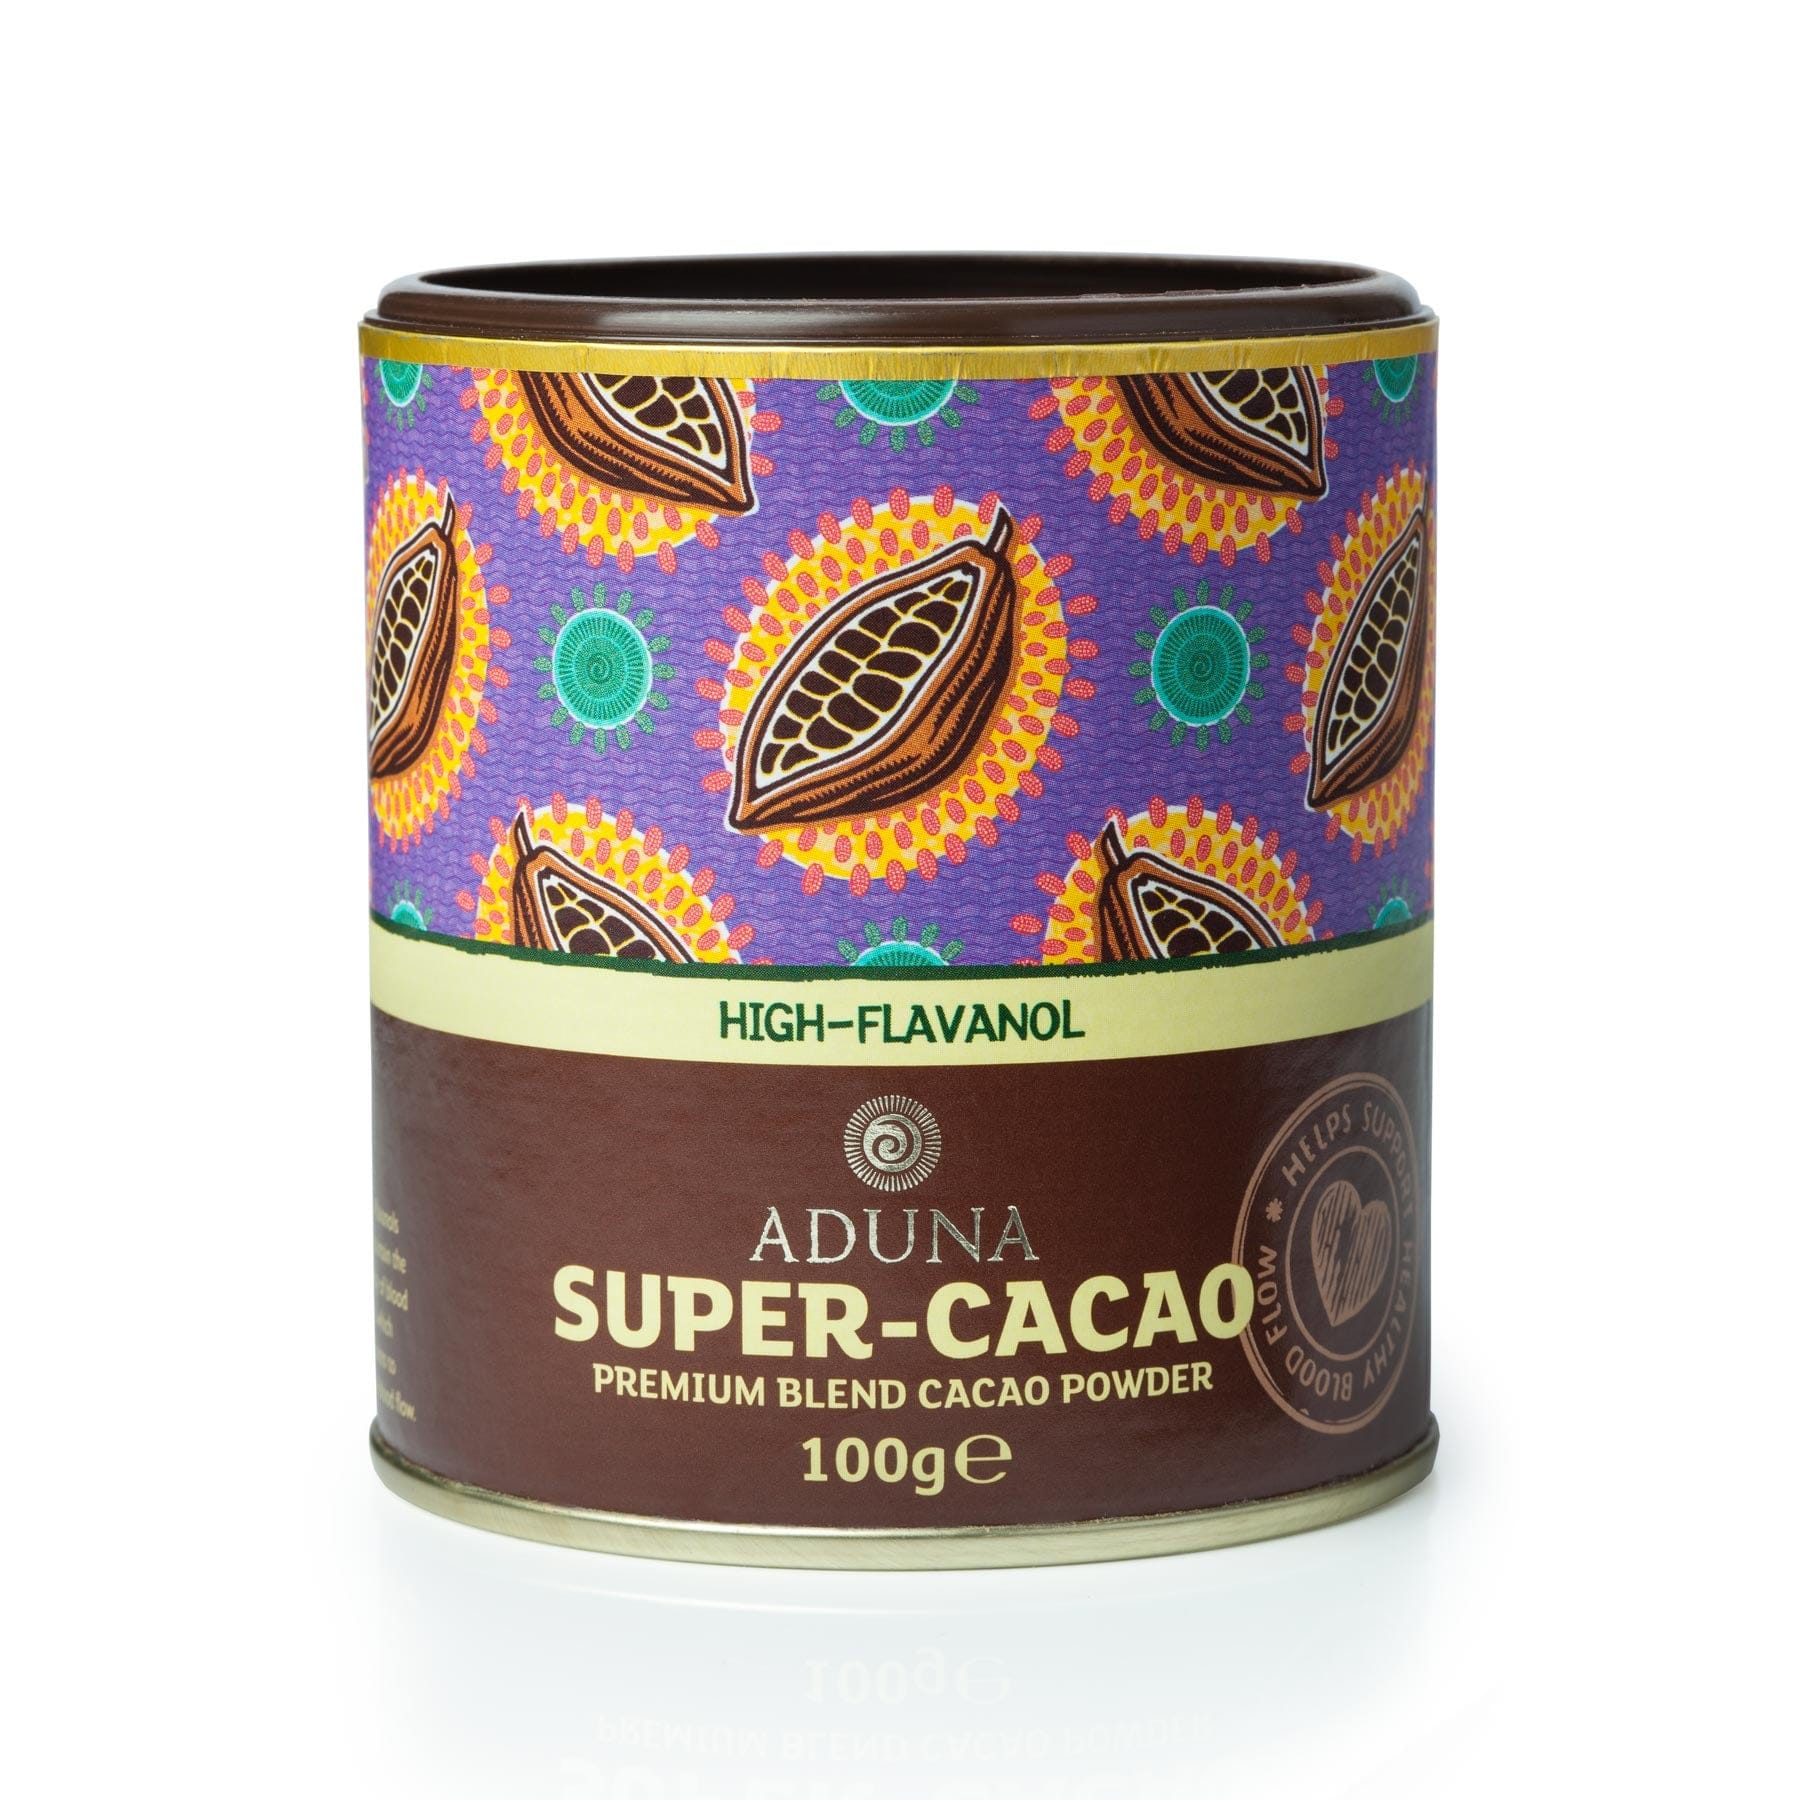 Super-cacao premium blend cacao powder 100g